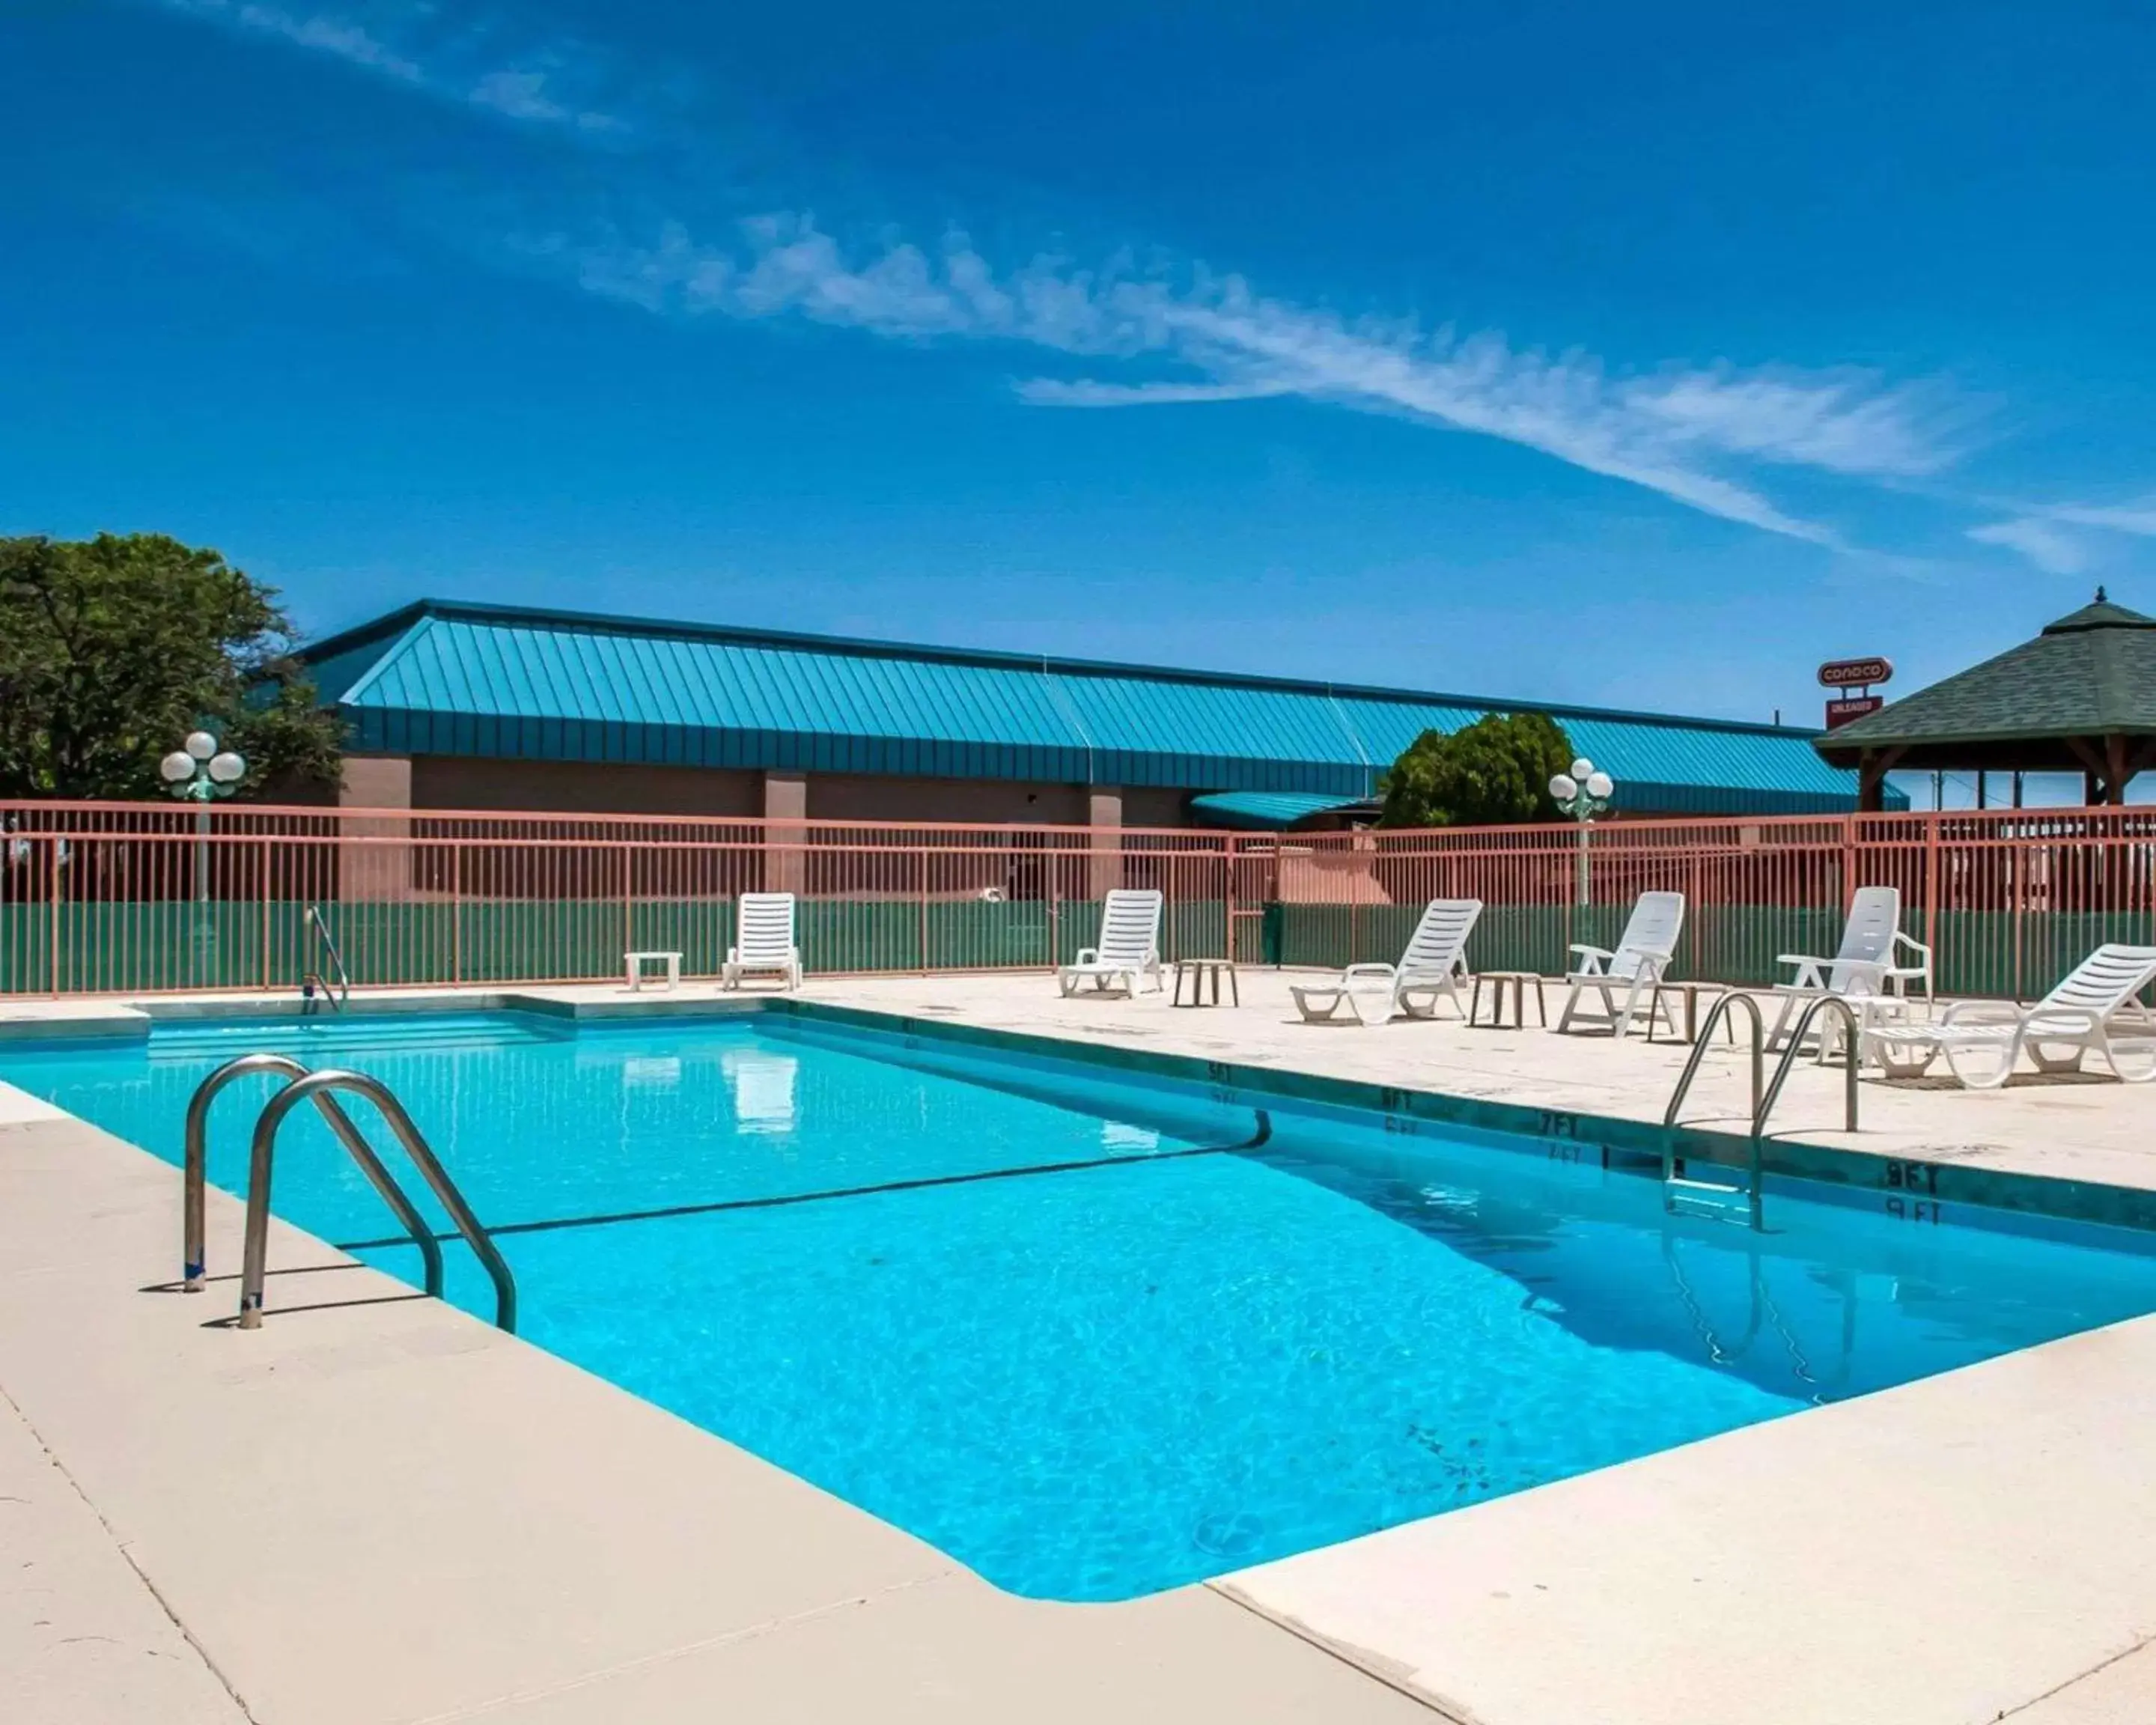 On site, Swimming Pool in Quality Inn Tucumcari